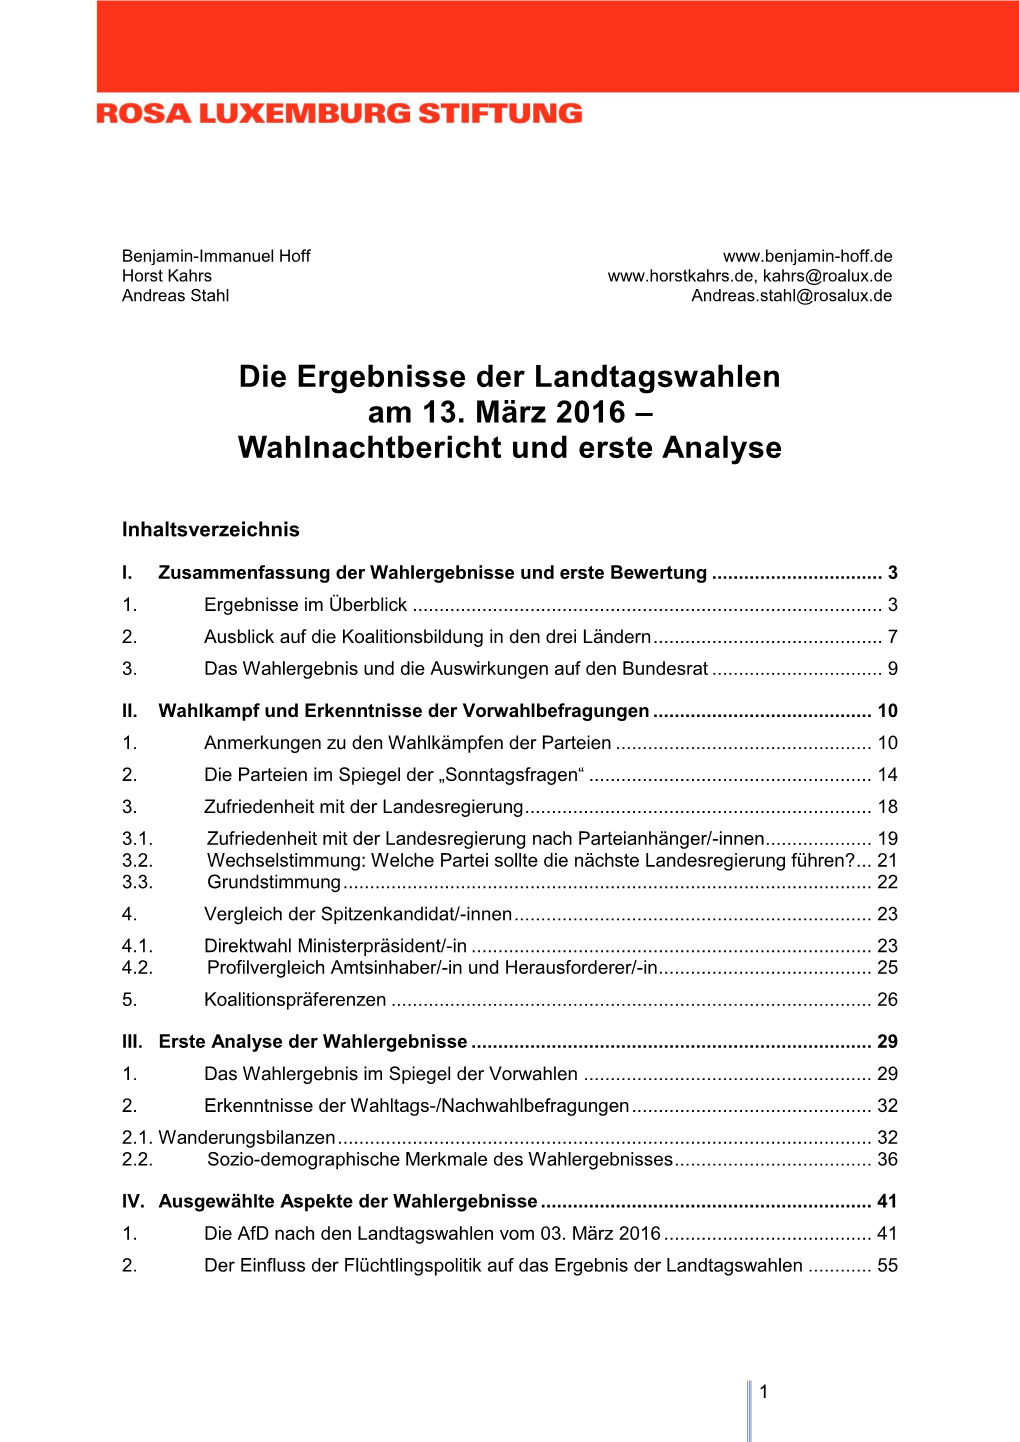 Die Ergebnisse Der Landtagswahlen Am 13. März 2016 – Wahlnachtbericht Und Erste Analyse